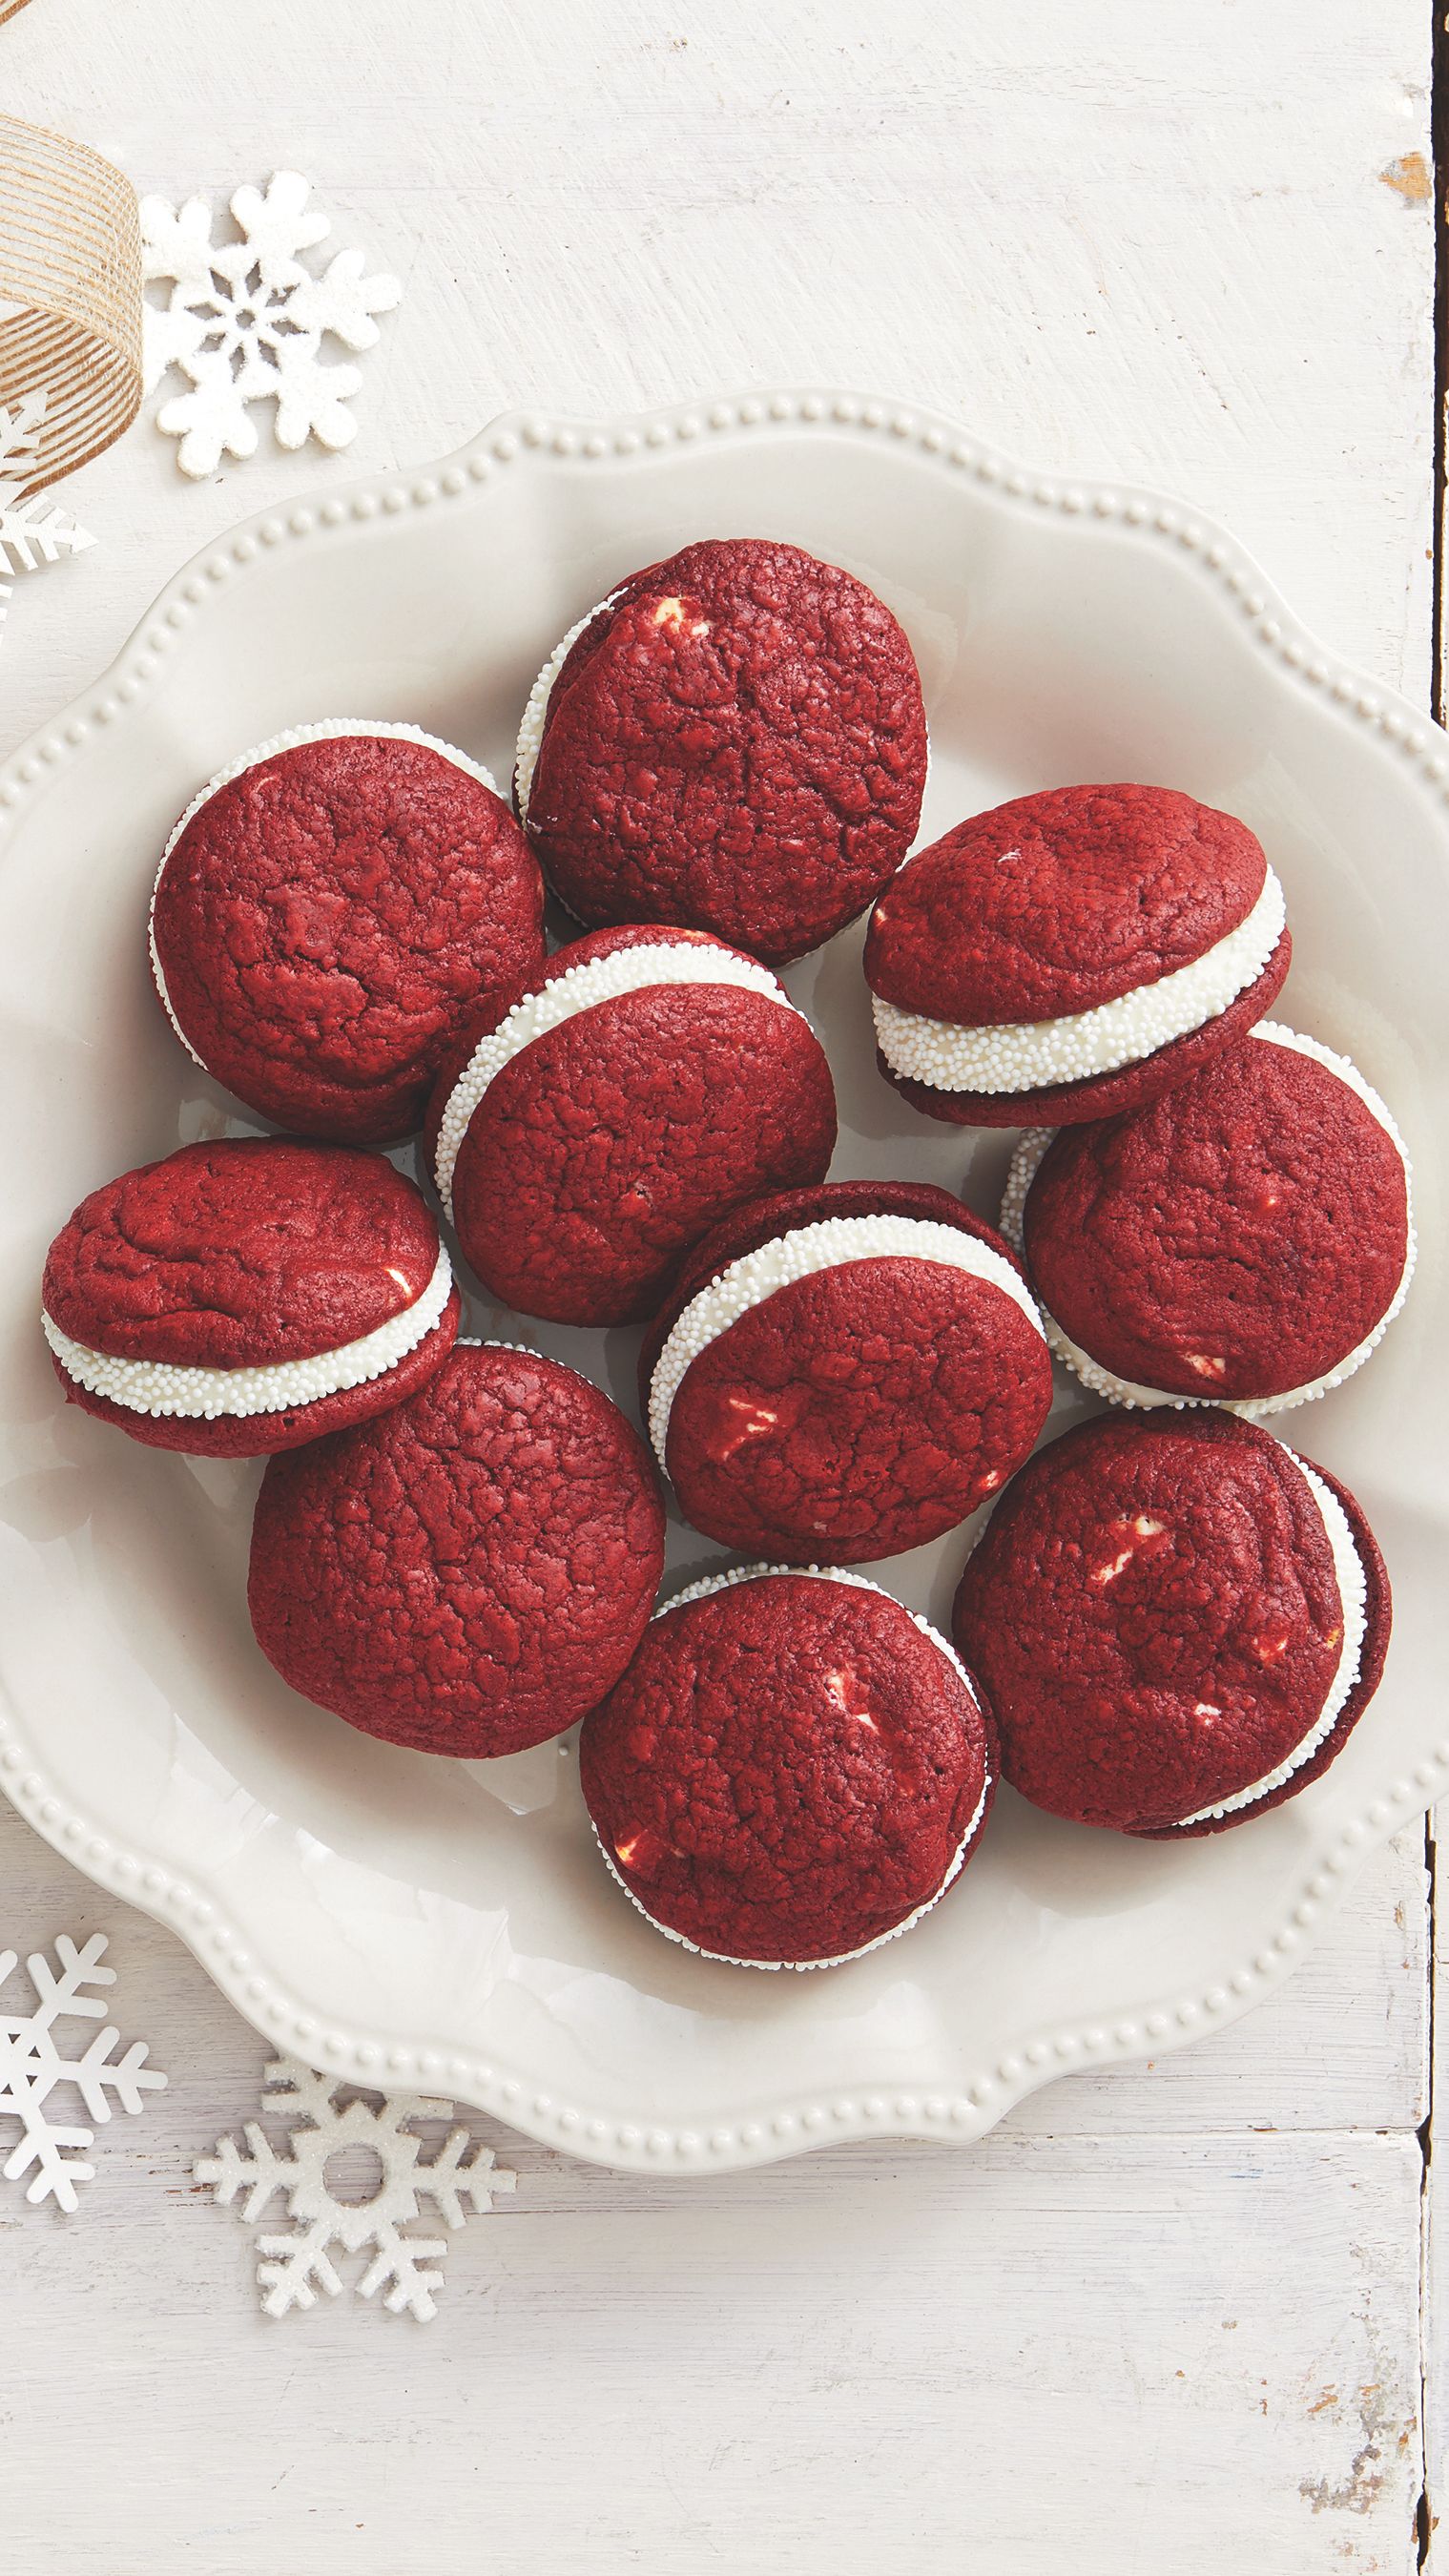 Best Red Velvet Sandwich Cookies Recipe How To Make Red Velvet Sandwich Cookies